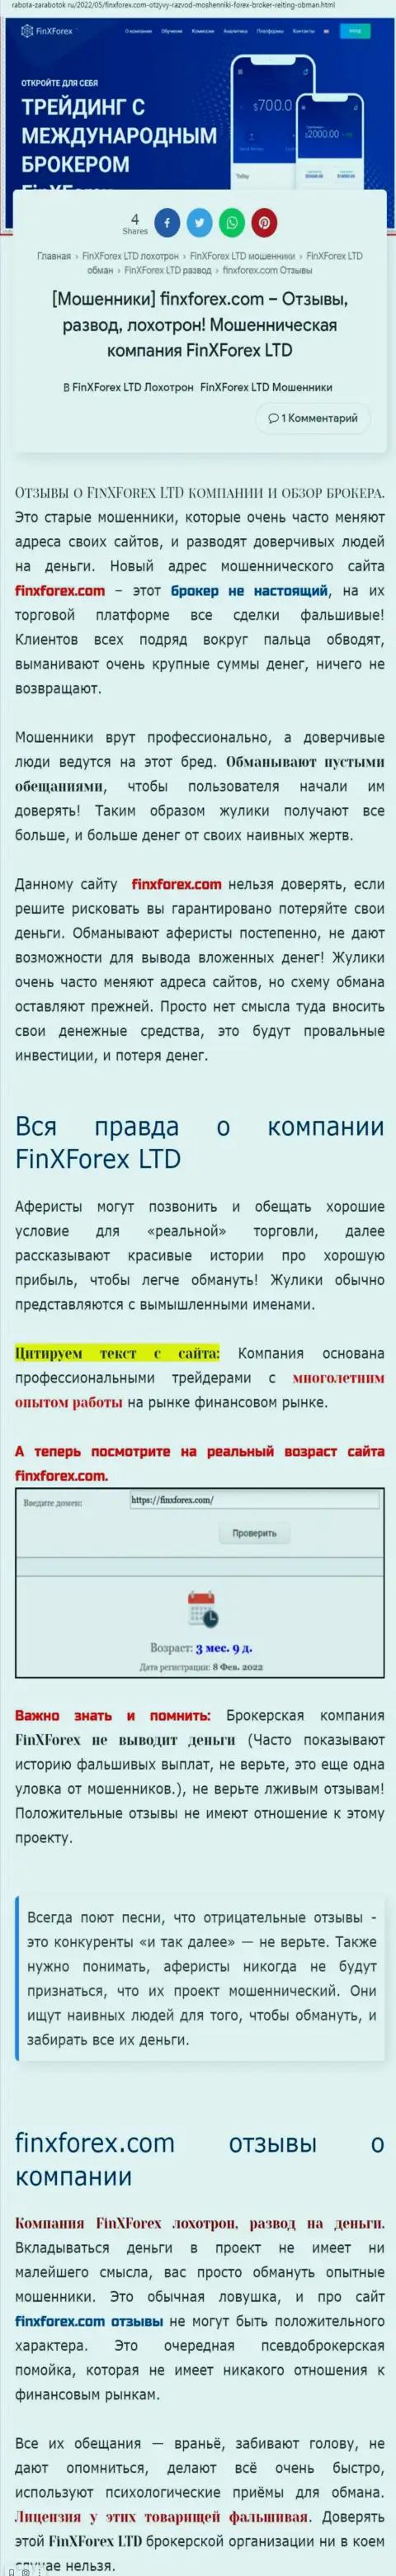 Автор публикации об FinXForex LTD пишет, что в организации FinXForex разводят